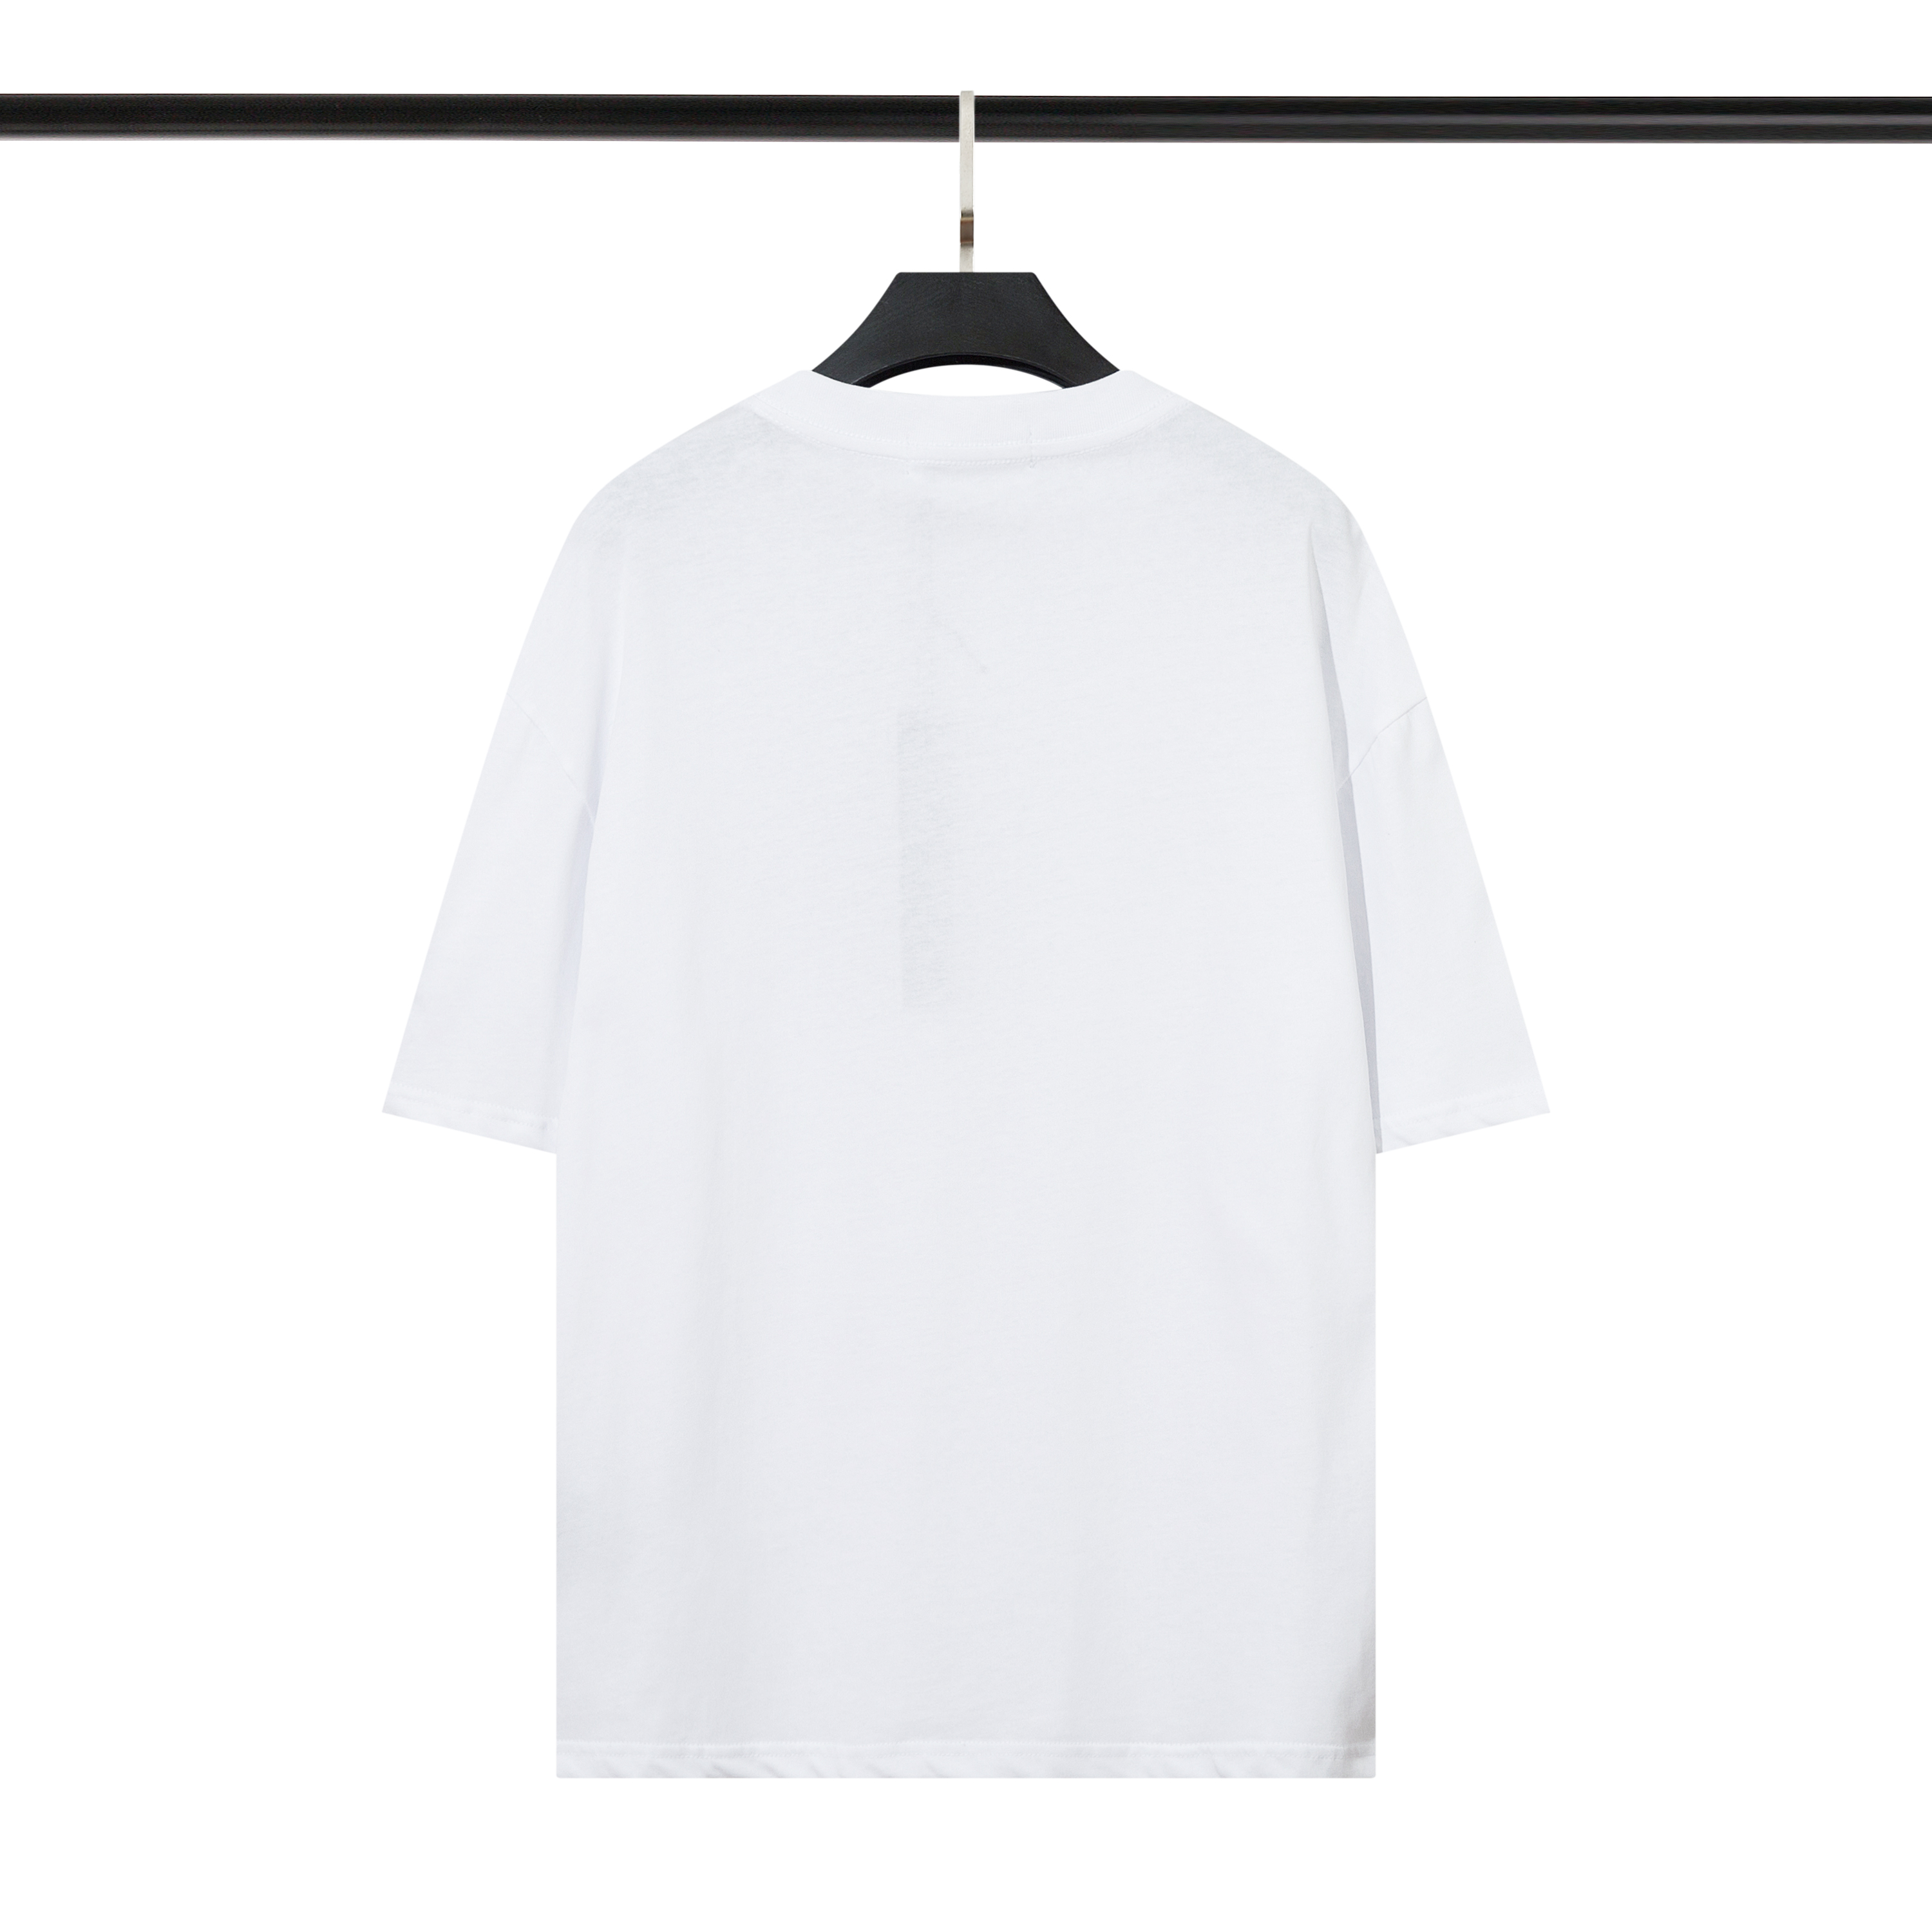 Nuova maglietta Designer TShirt T-shirt da uomo di lusso Nero Bianco Colore Lettere Puro cotone dimagrante anti-pilling Manica corta Uomo Donna TLa moda il tempo libero